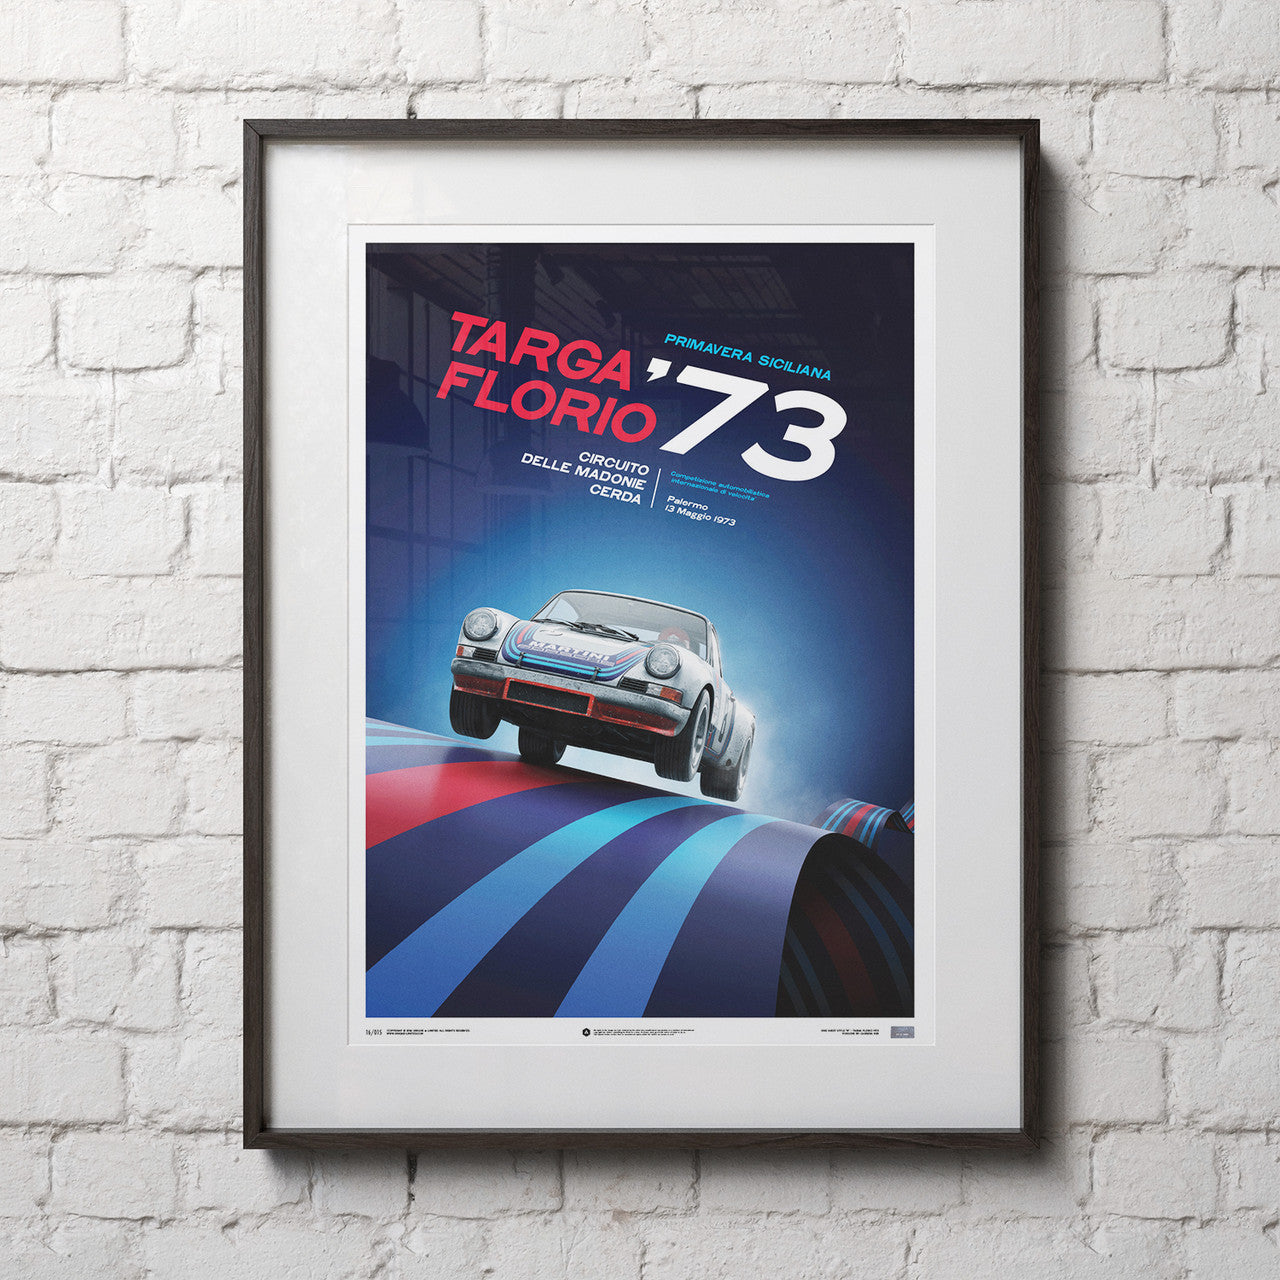 Porsche 911 Carrera RSR 2.8 – 50th Anniversary – 1973 – Targa Florio –  Poster